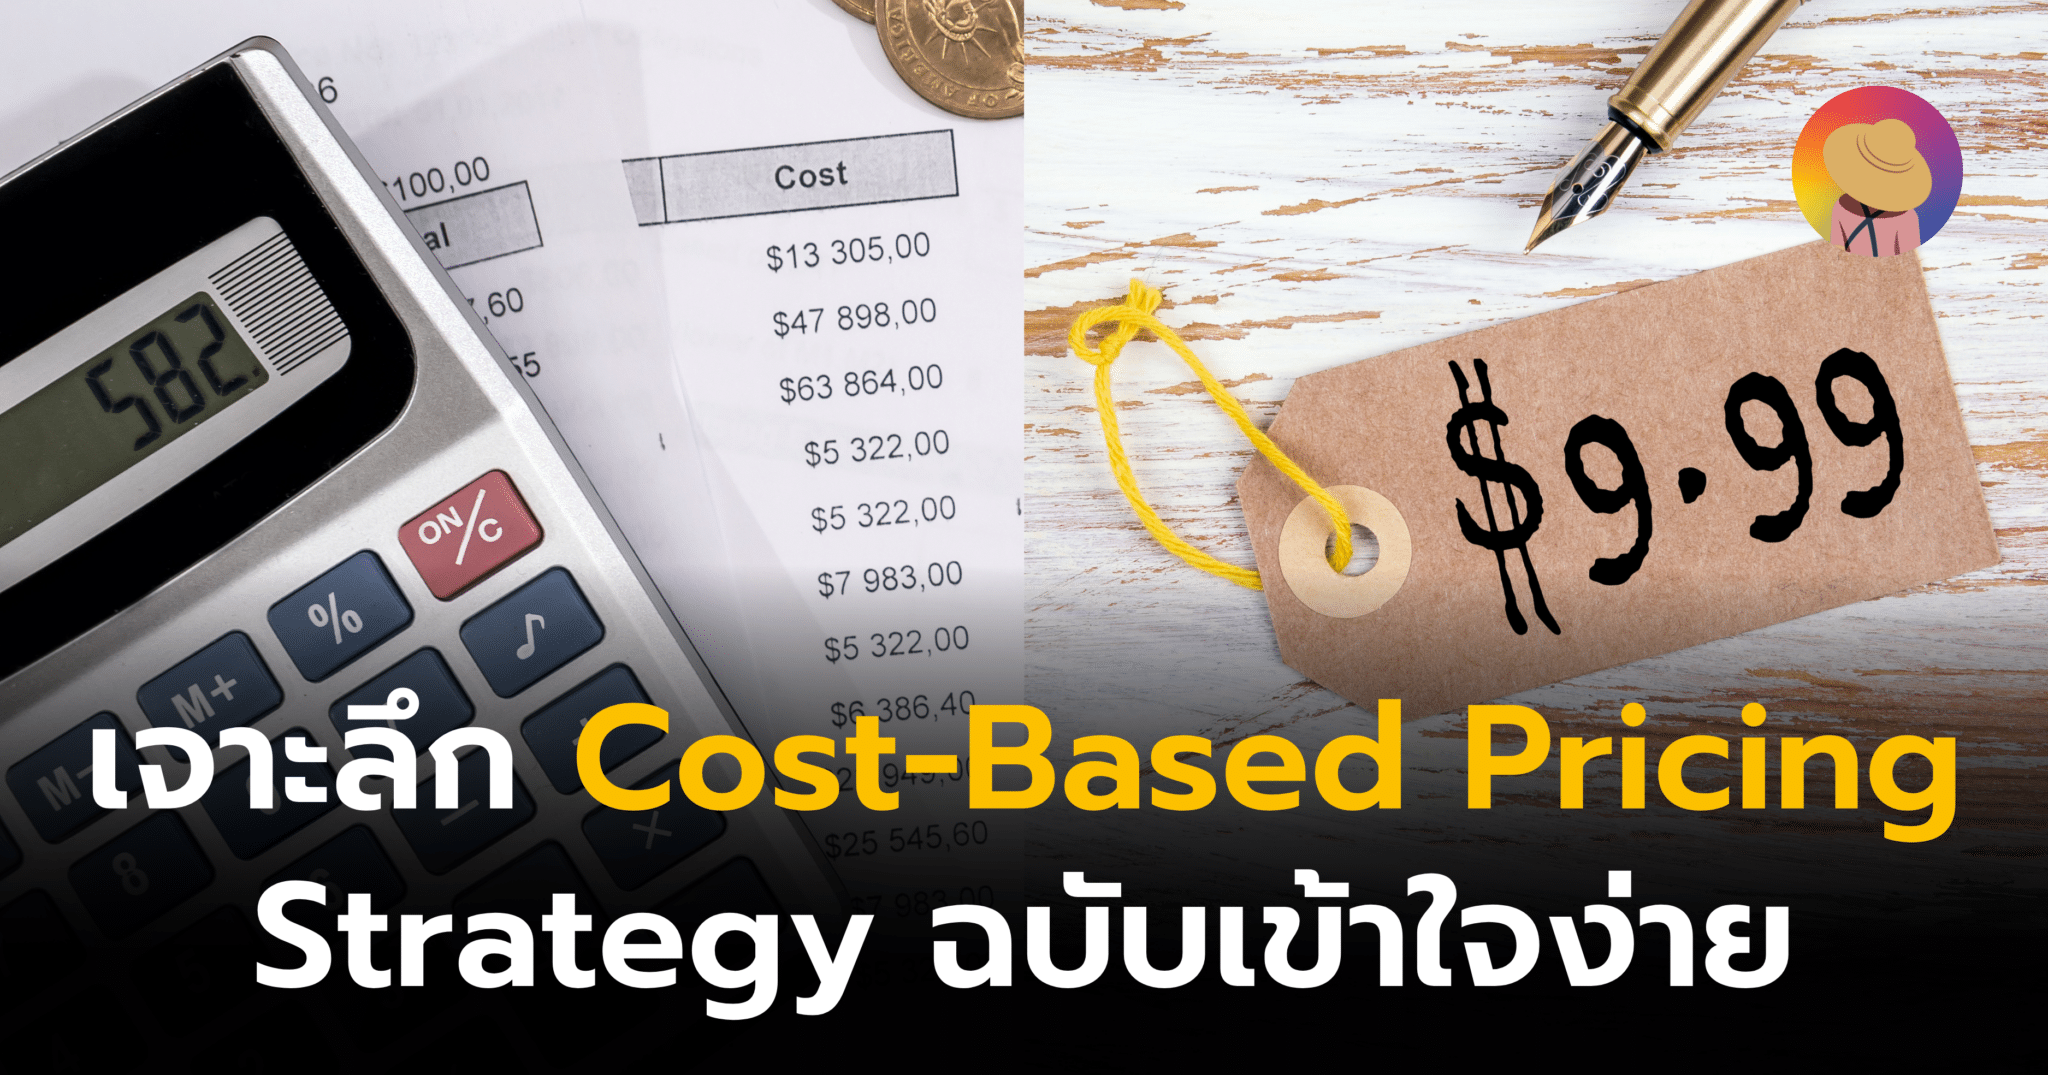 เจาะลึก Cost-Based Pricing Strategy ฉบับเข้าใจง่าย